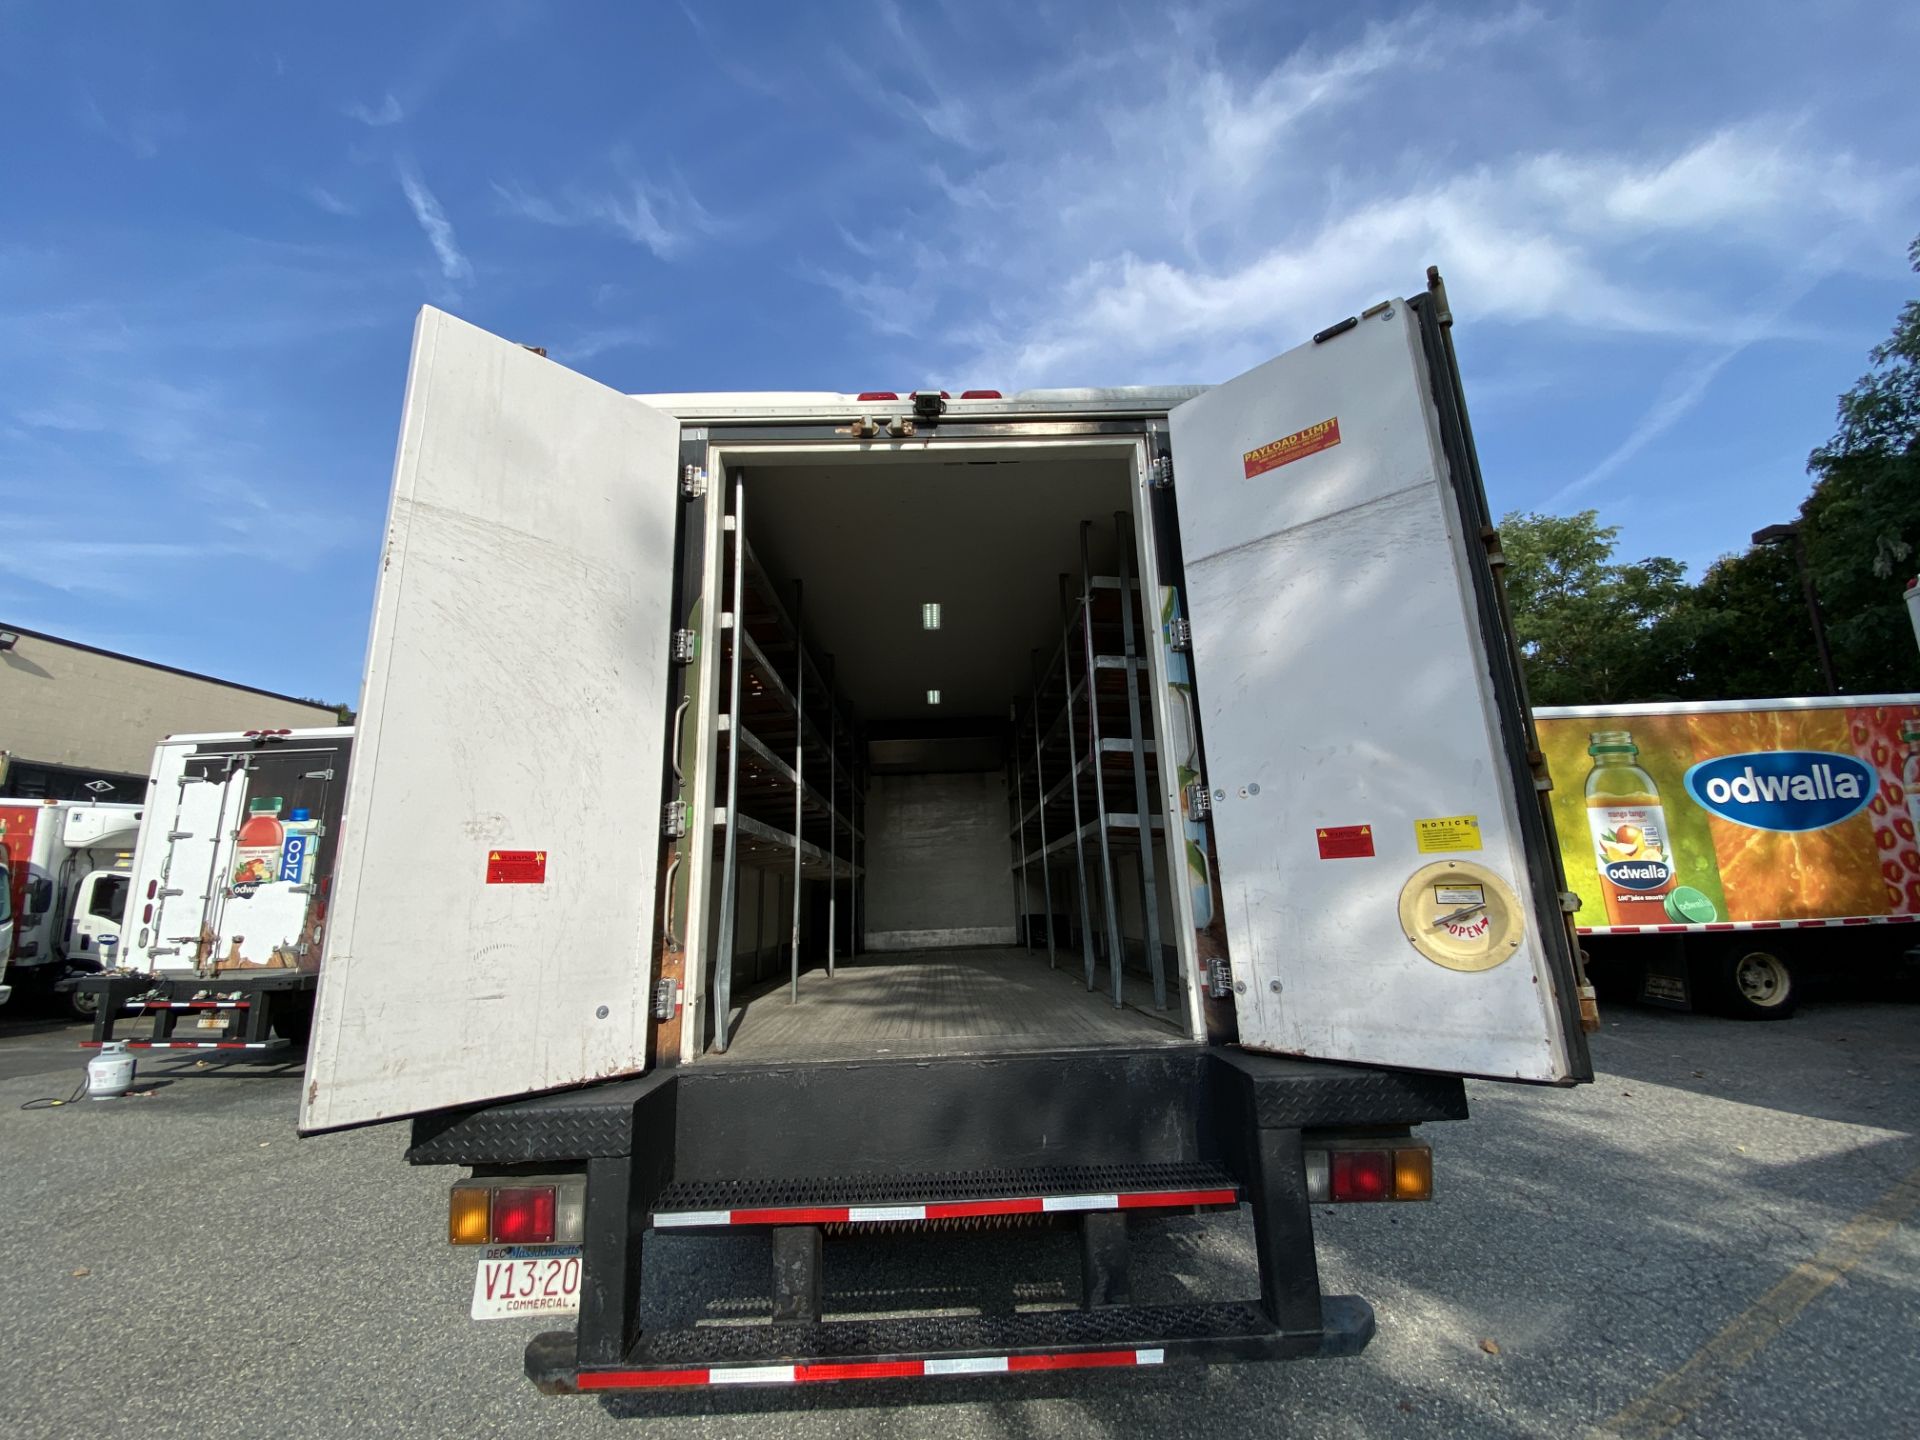 2012 Isuzu refrigerated truck - Image 5 of 9